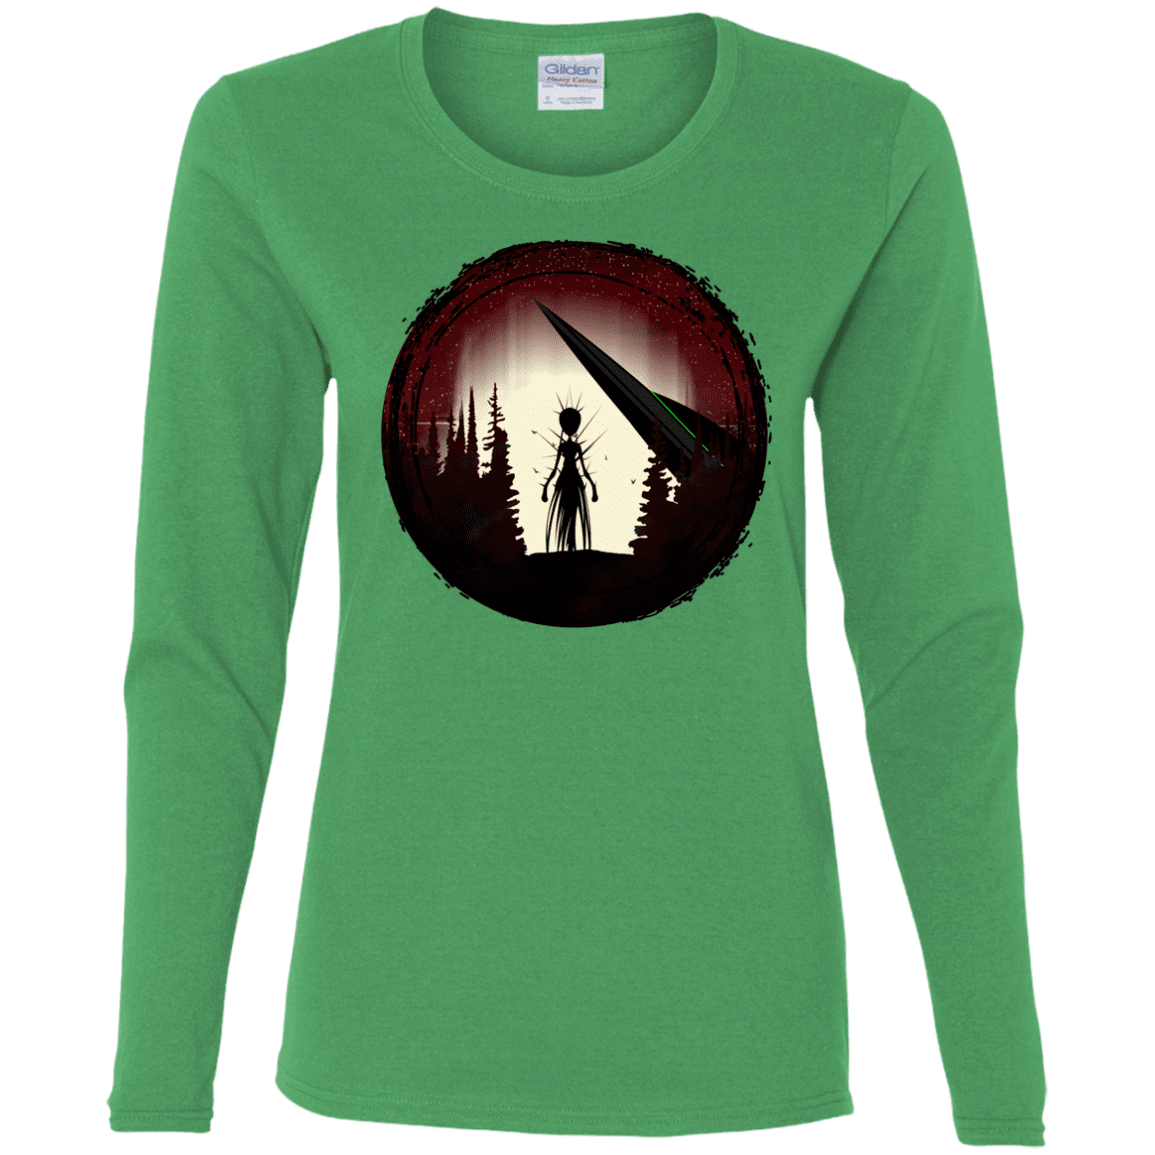 T-Shirts Irish Green / S Alien Armor Women's Long Sleeve T-Shirt